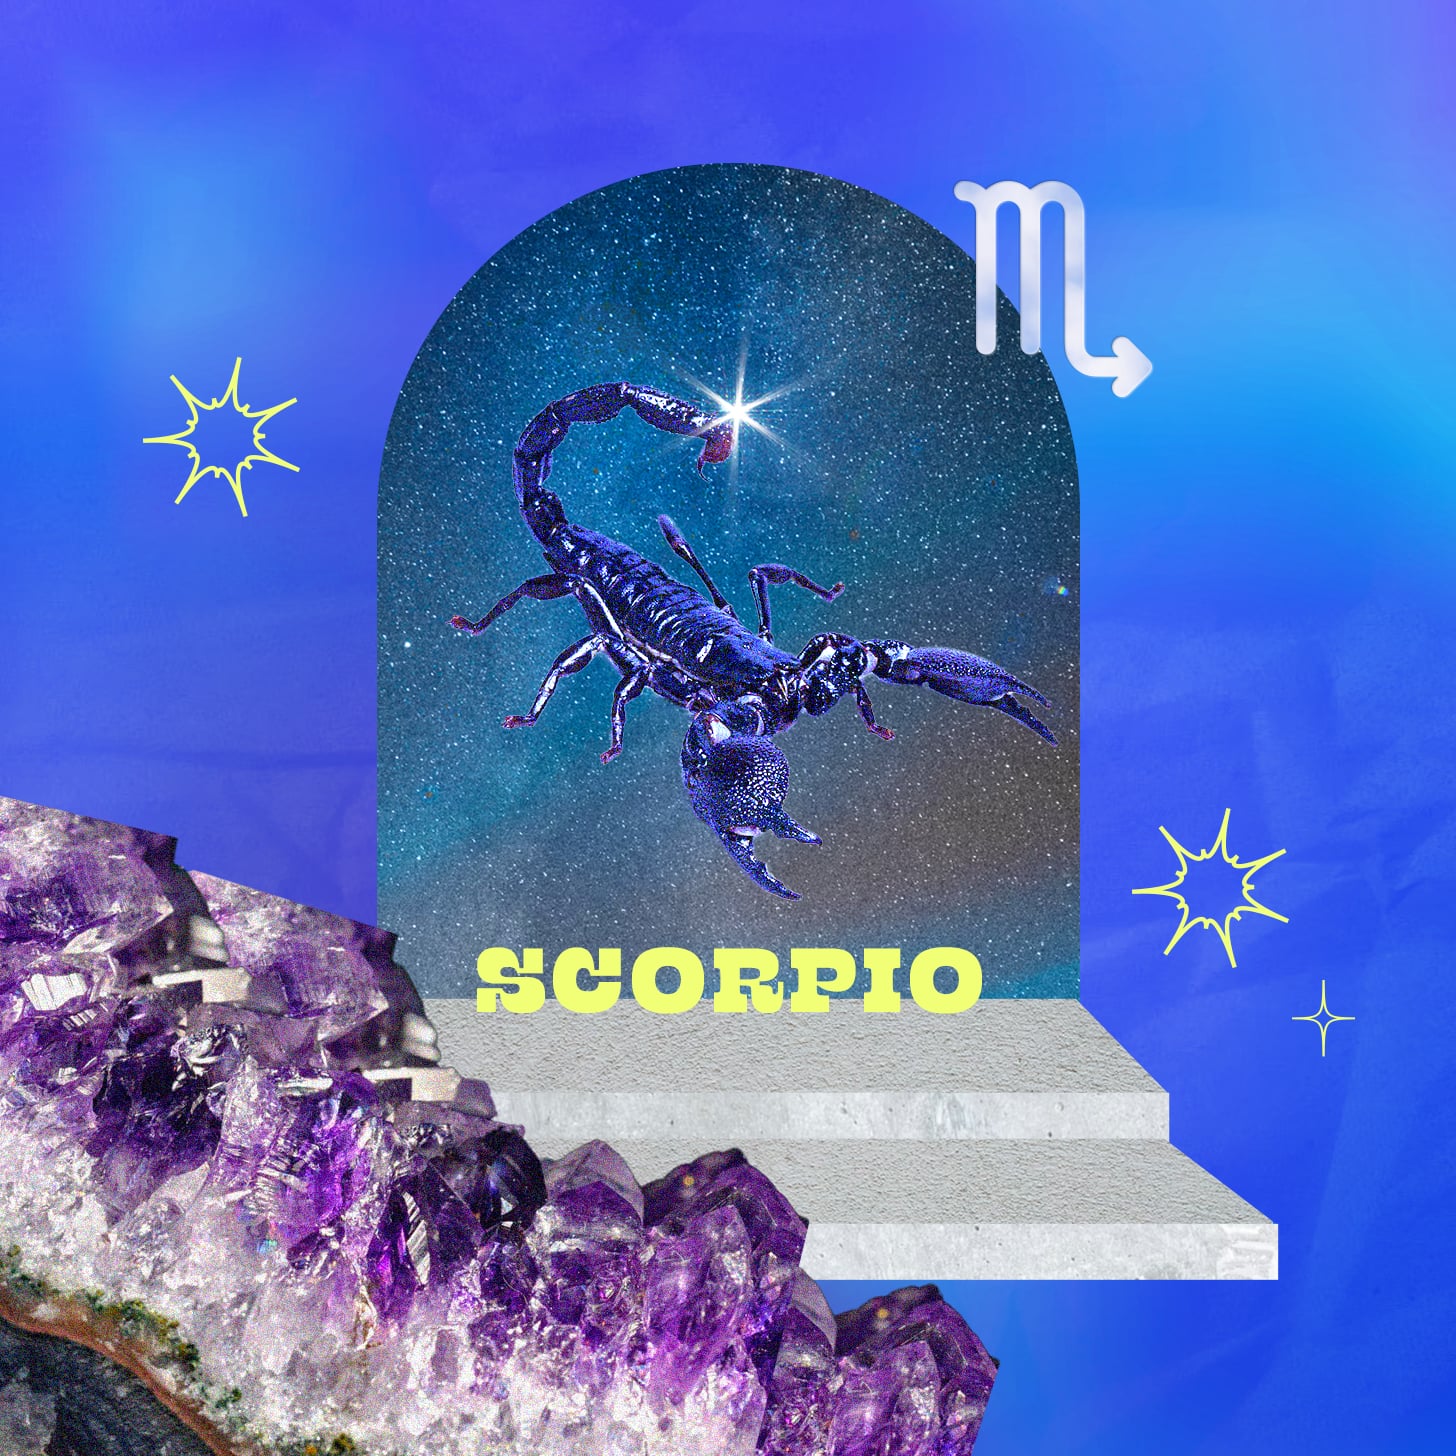 Scorpio weekly horoscope for June 19, 2022